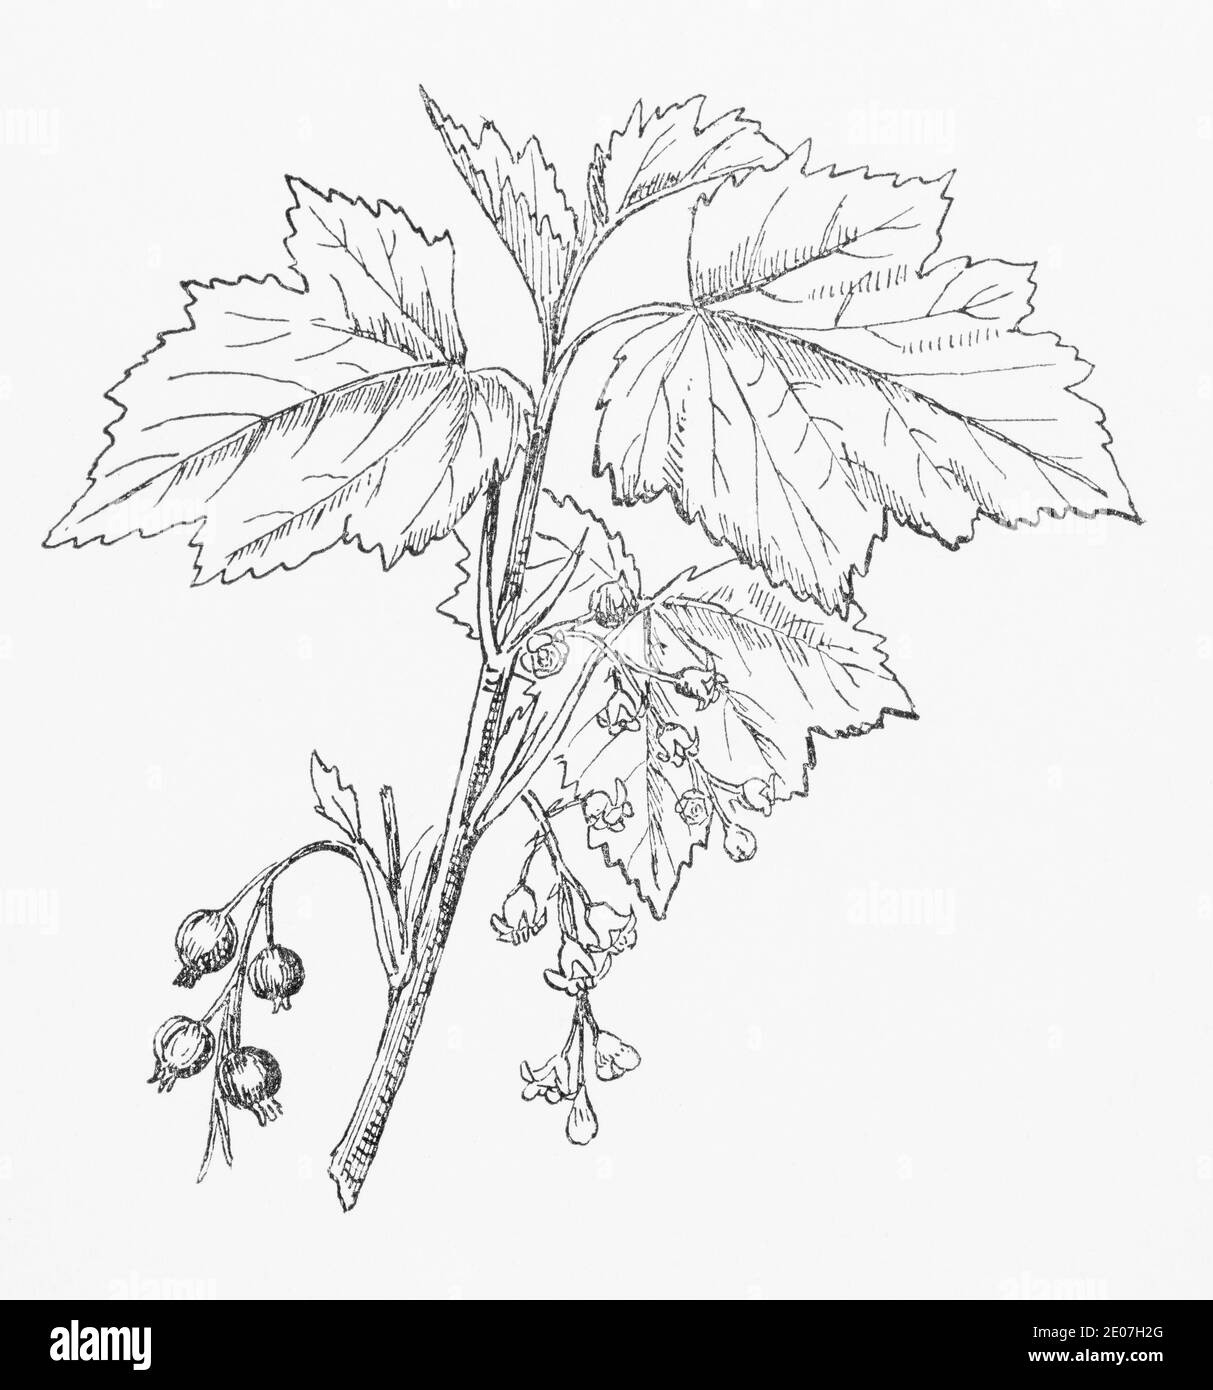 Ancienne gravure d'illustration botanique du currant noir, du cassis / Ribes nigrum. Plante médicinale traditionnelle. Voir Remarques Banque D'Images